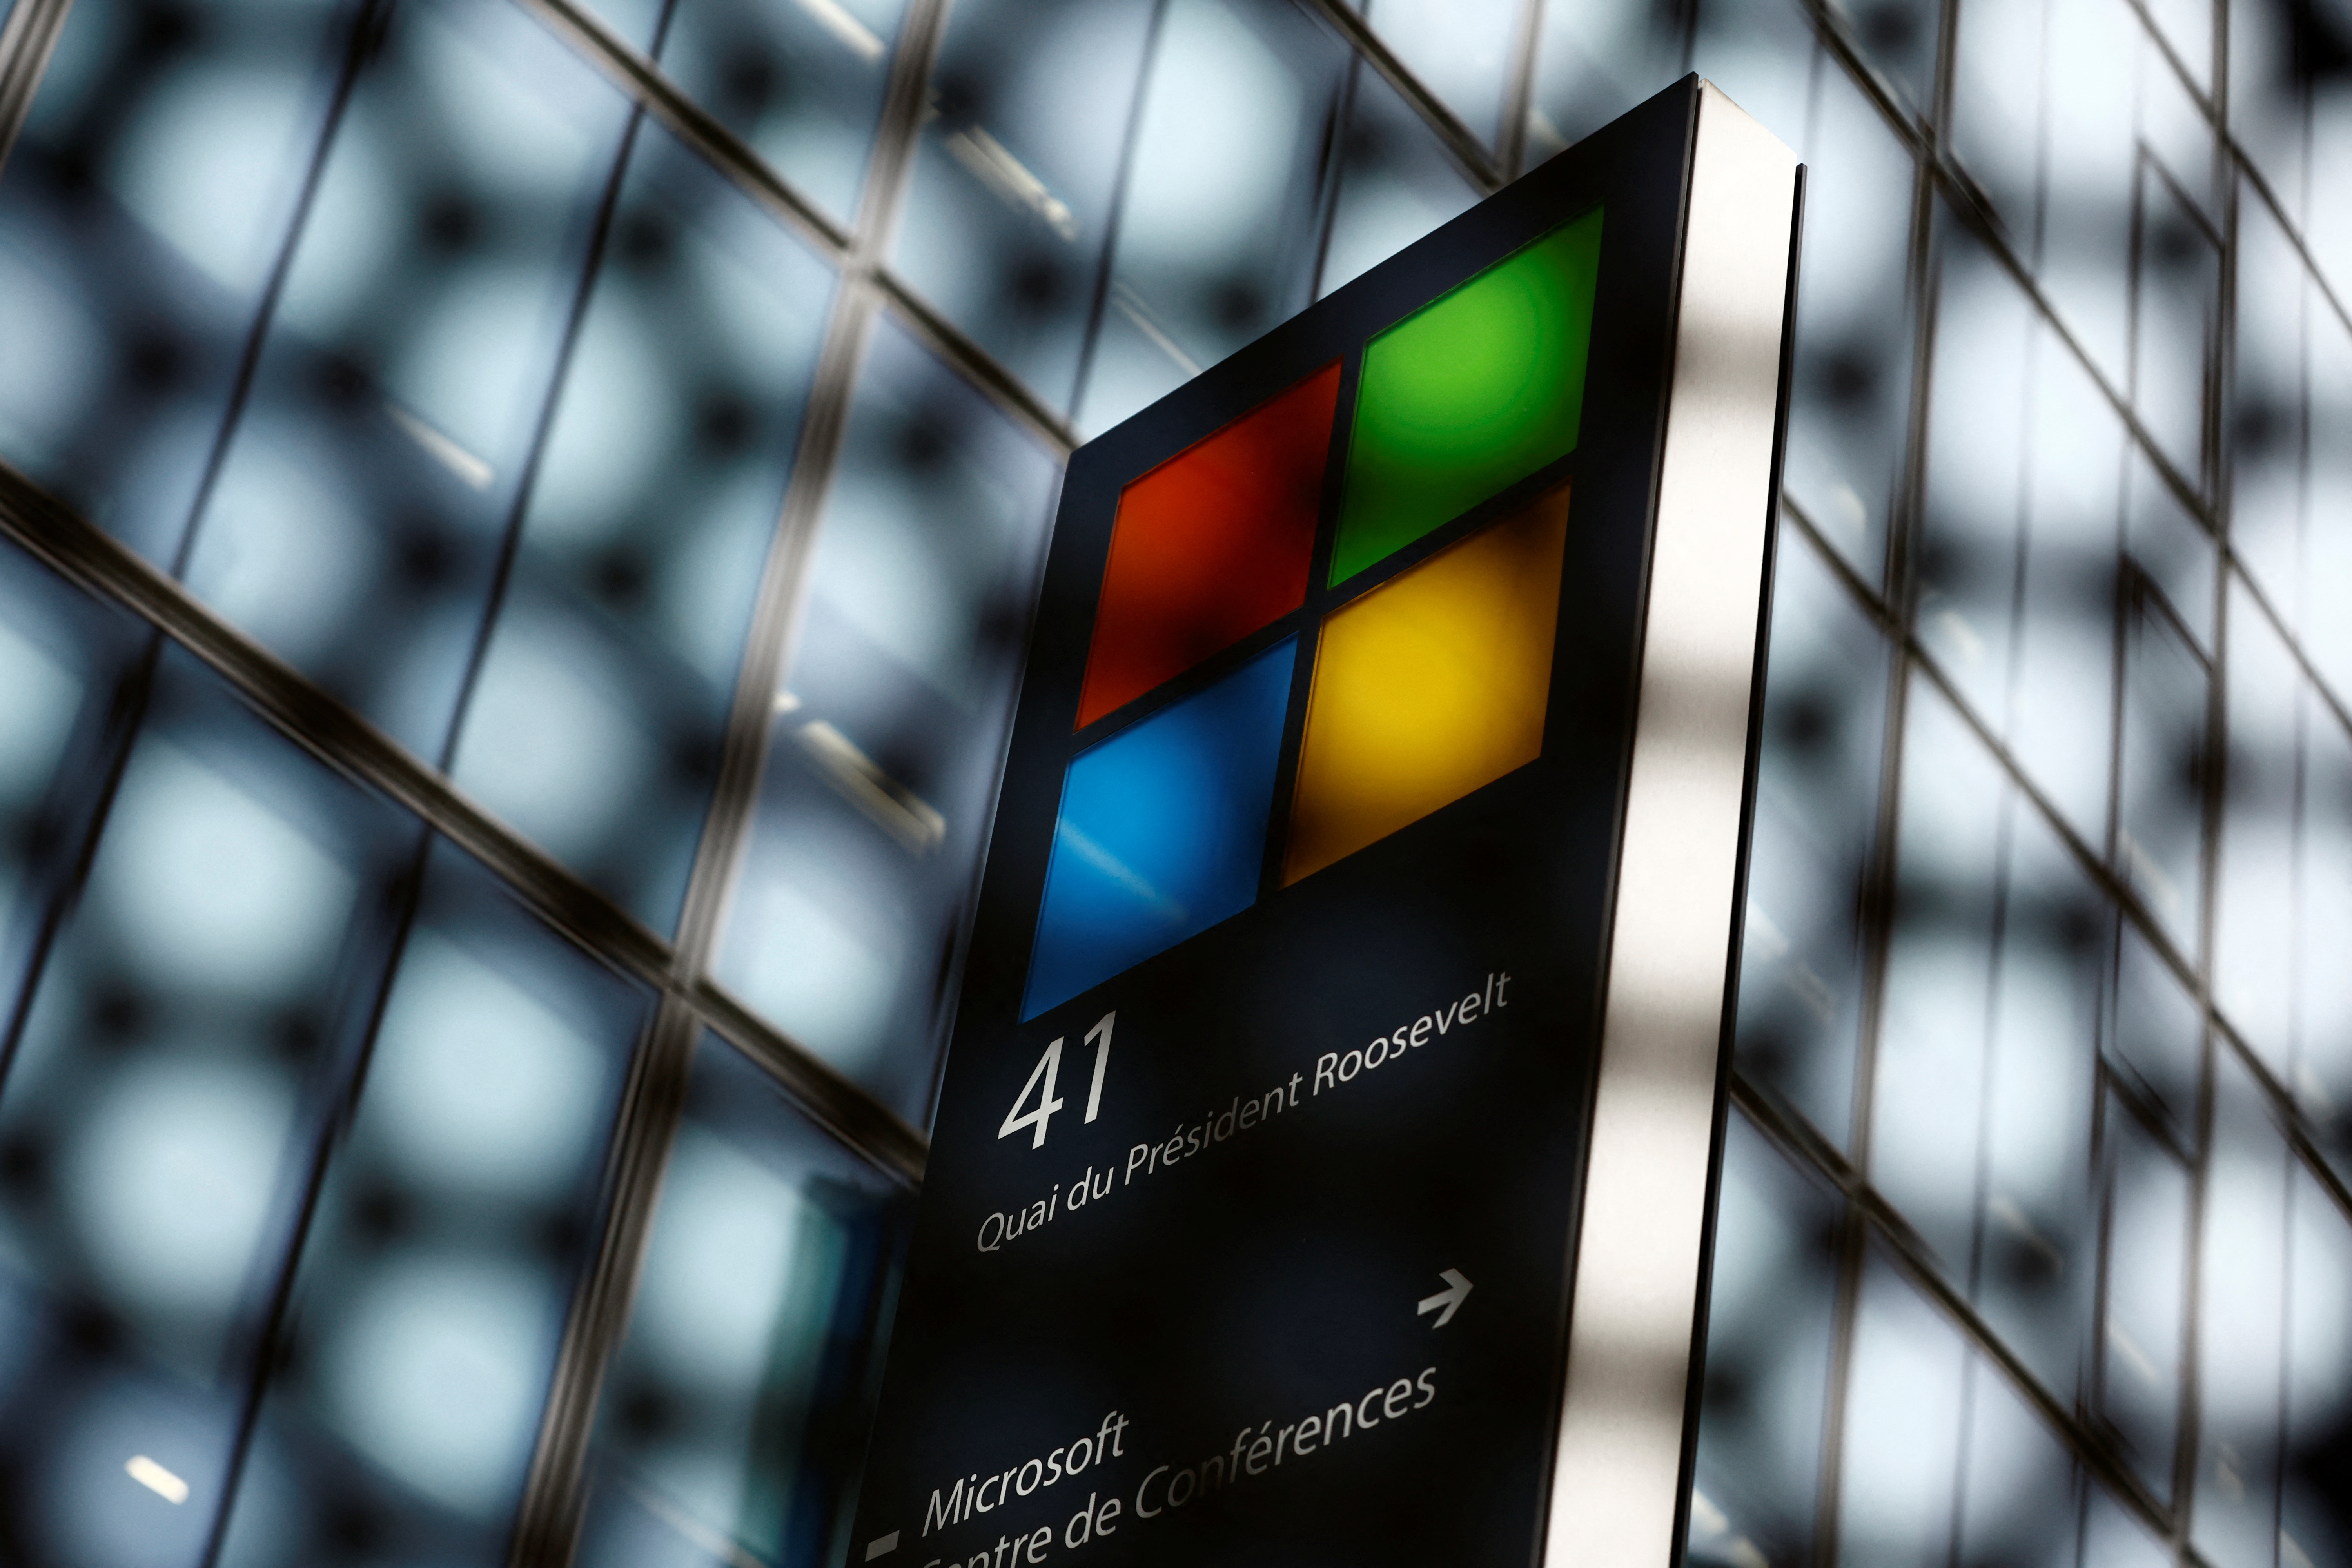 A Microsoft logo is seen in Issy-les-Moulineaux near Paris